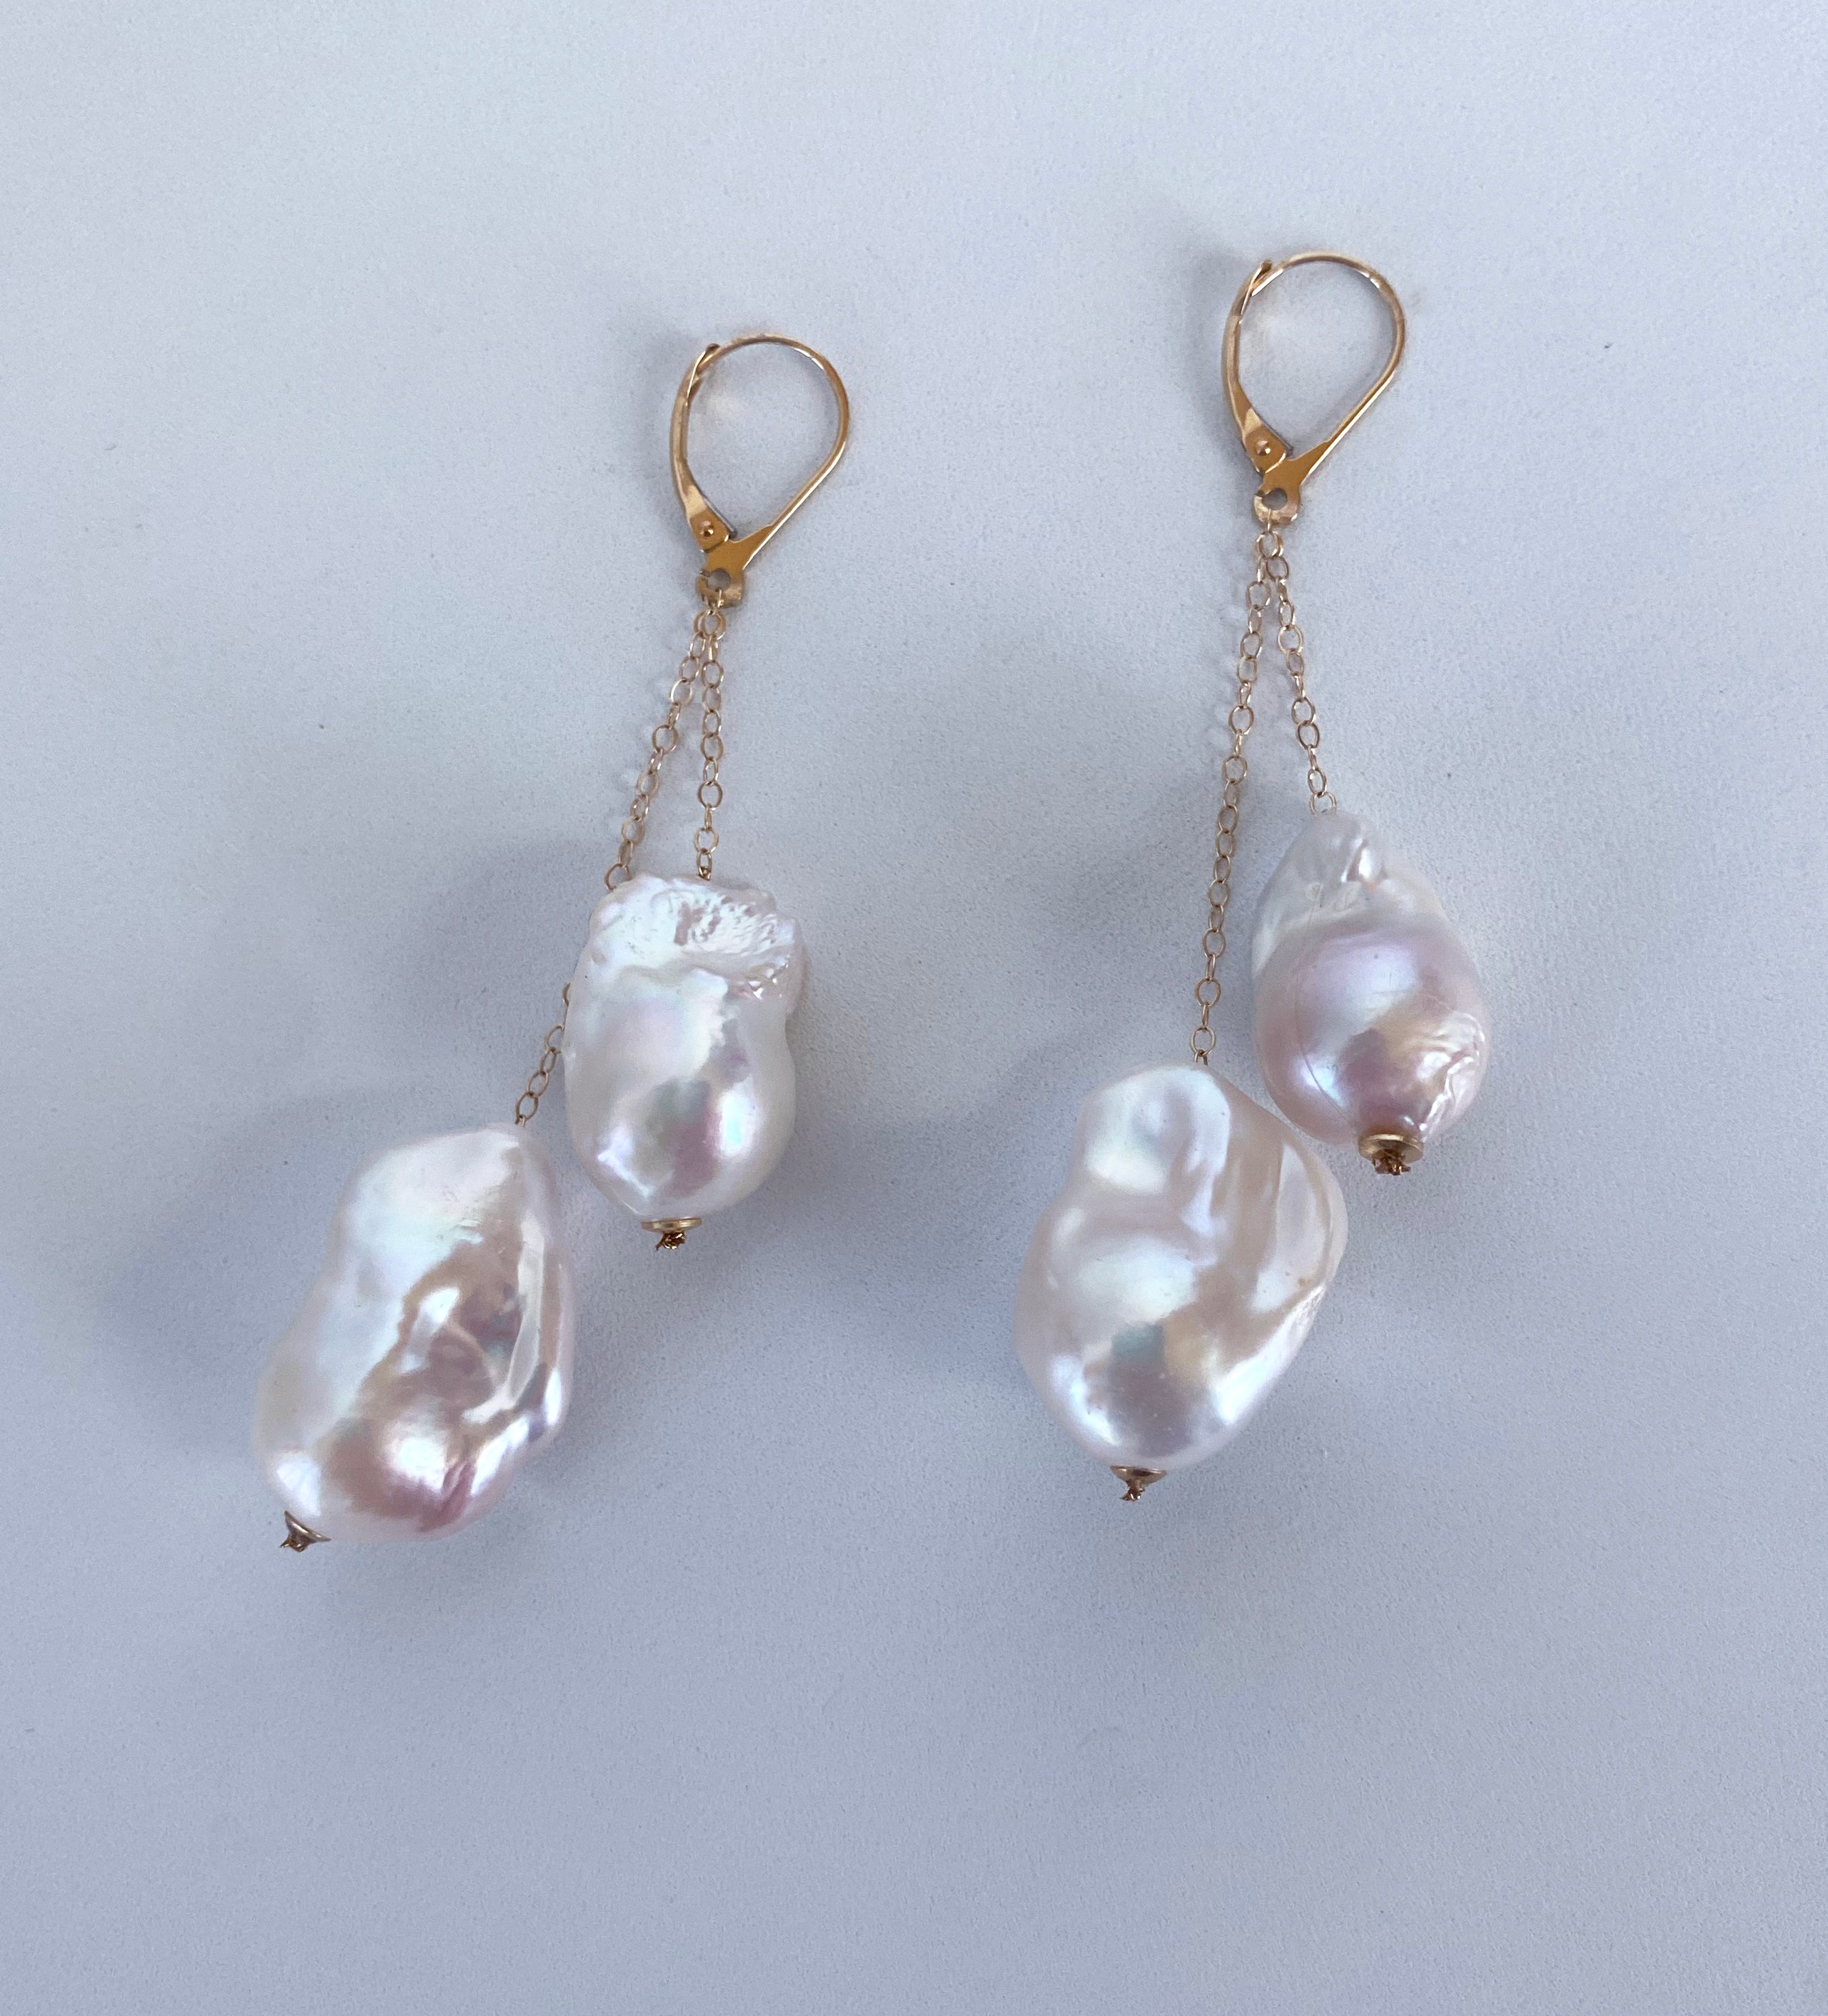 Ein wunderschönes Paar Ohrringe von Marina J. Dieses Paar besteht aus insgesamt vier weißen Barockperlen, die einen wunderschönen, mehrfarbig schillernden Glanz aufweisen. An jedem Ohrring hängen zwei Perlen an einer massiven Kette aus 14k Gelbgold.